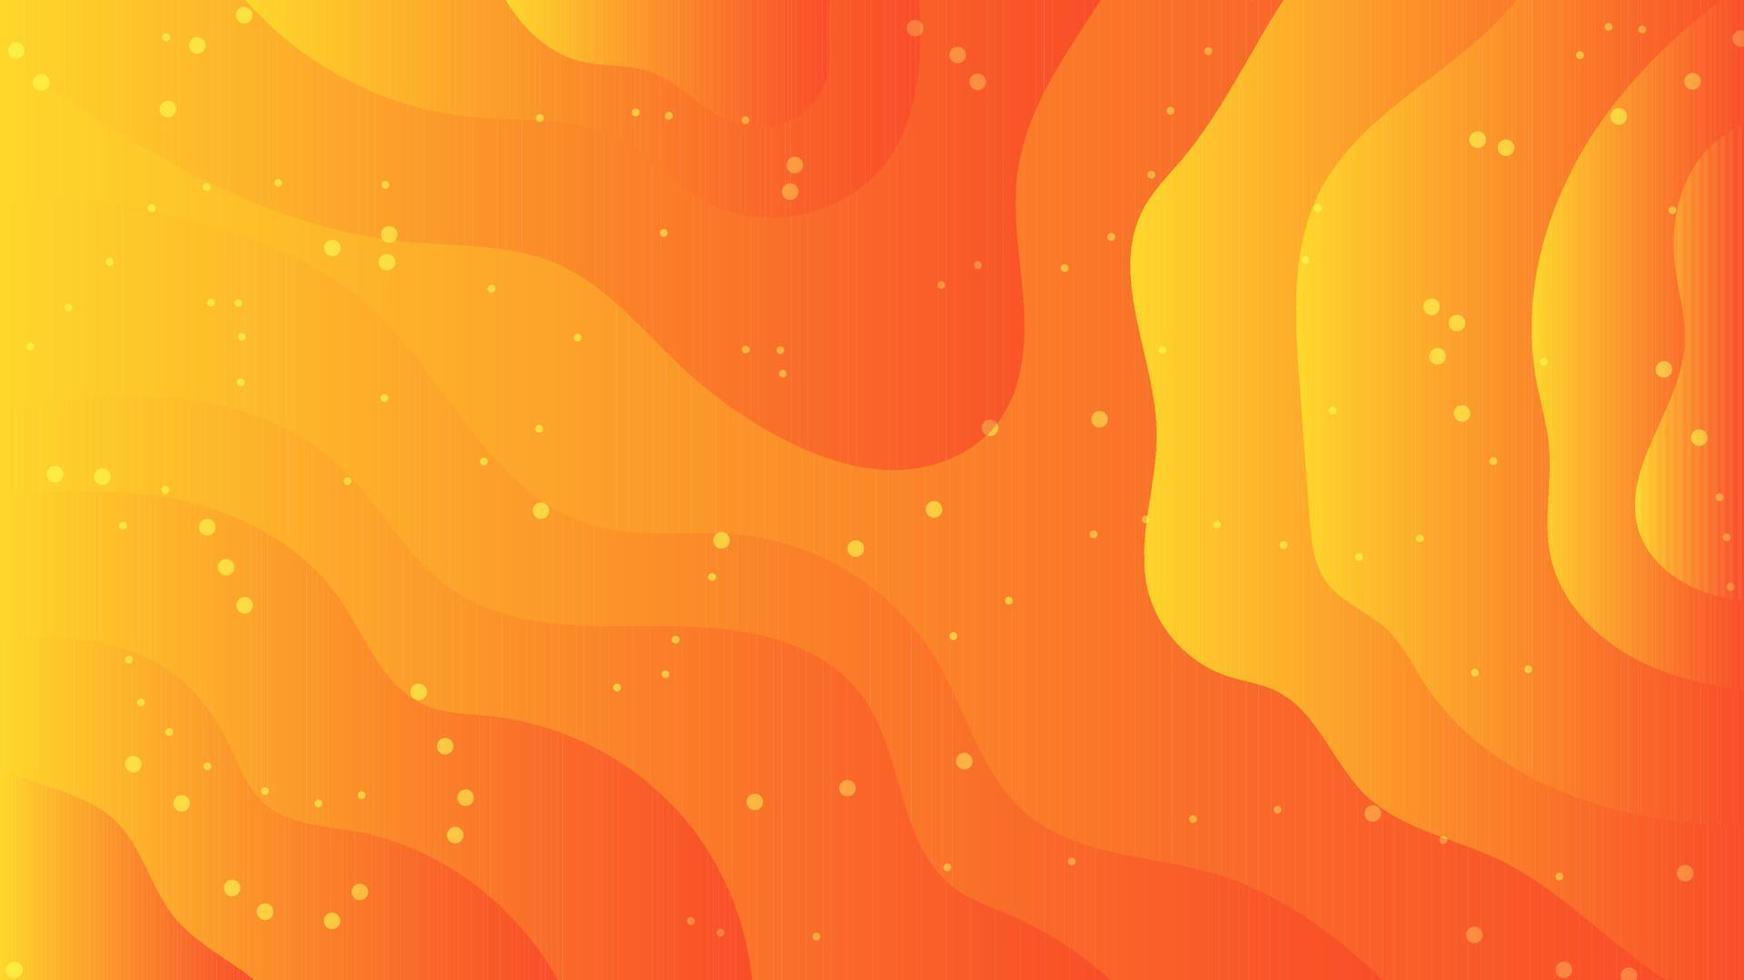 las ondas abstractas se superponen al fondo naranja texturizado vector